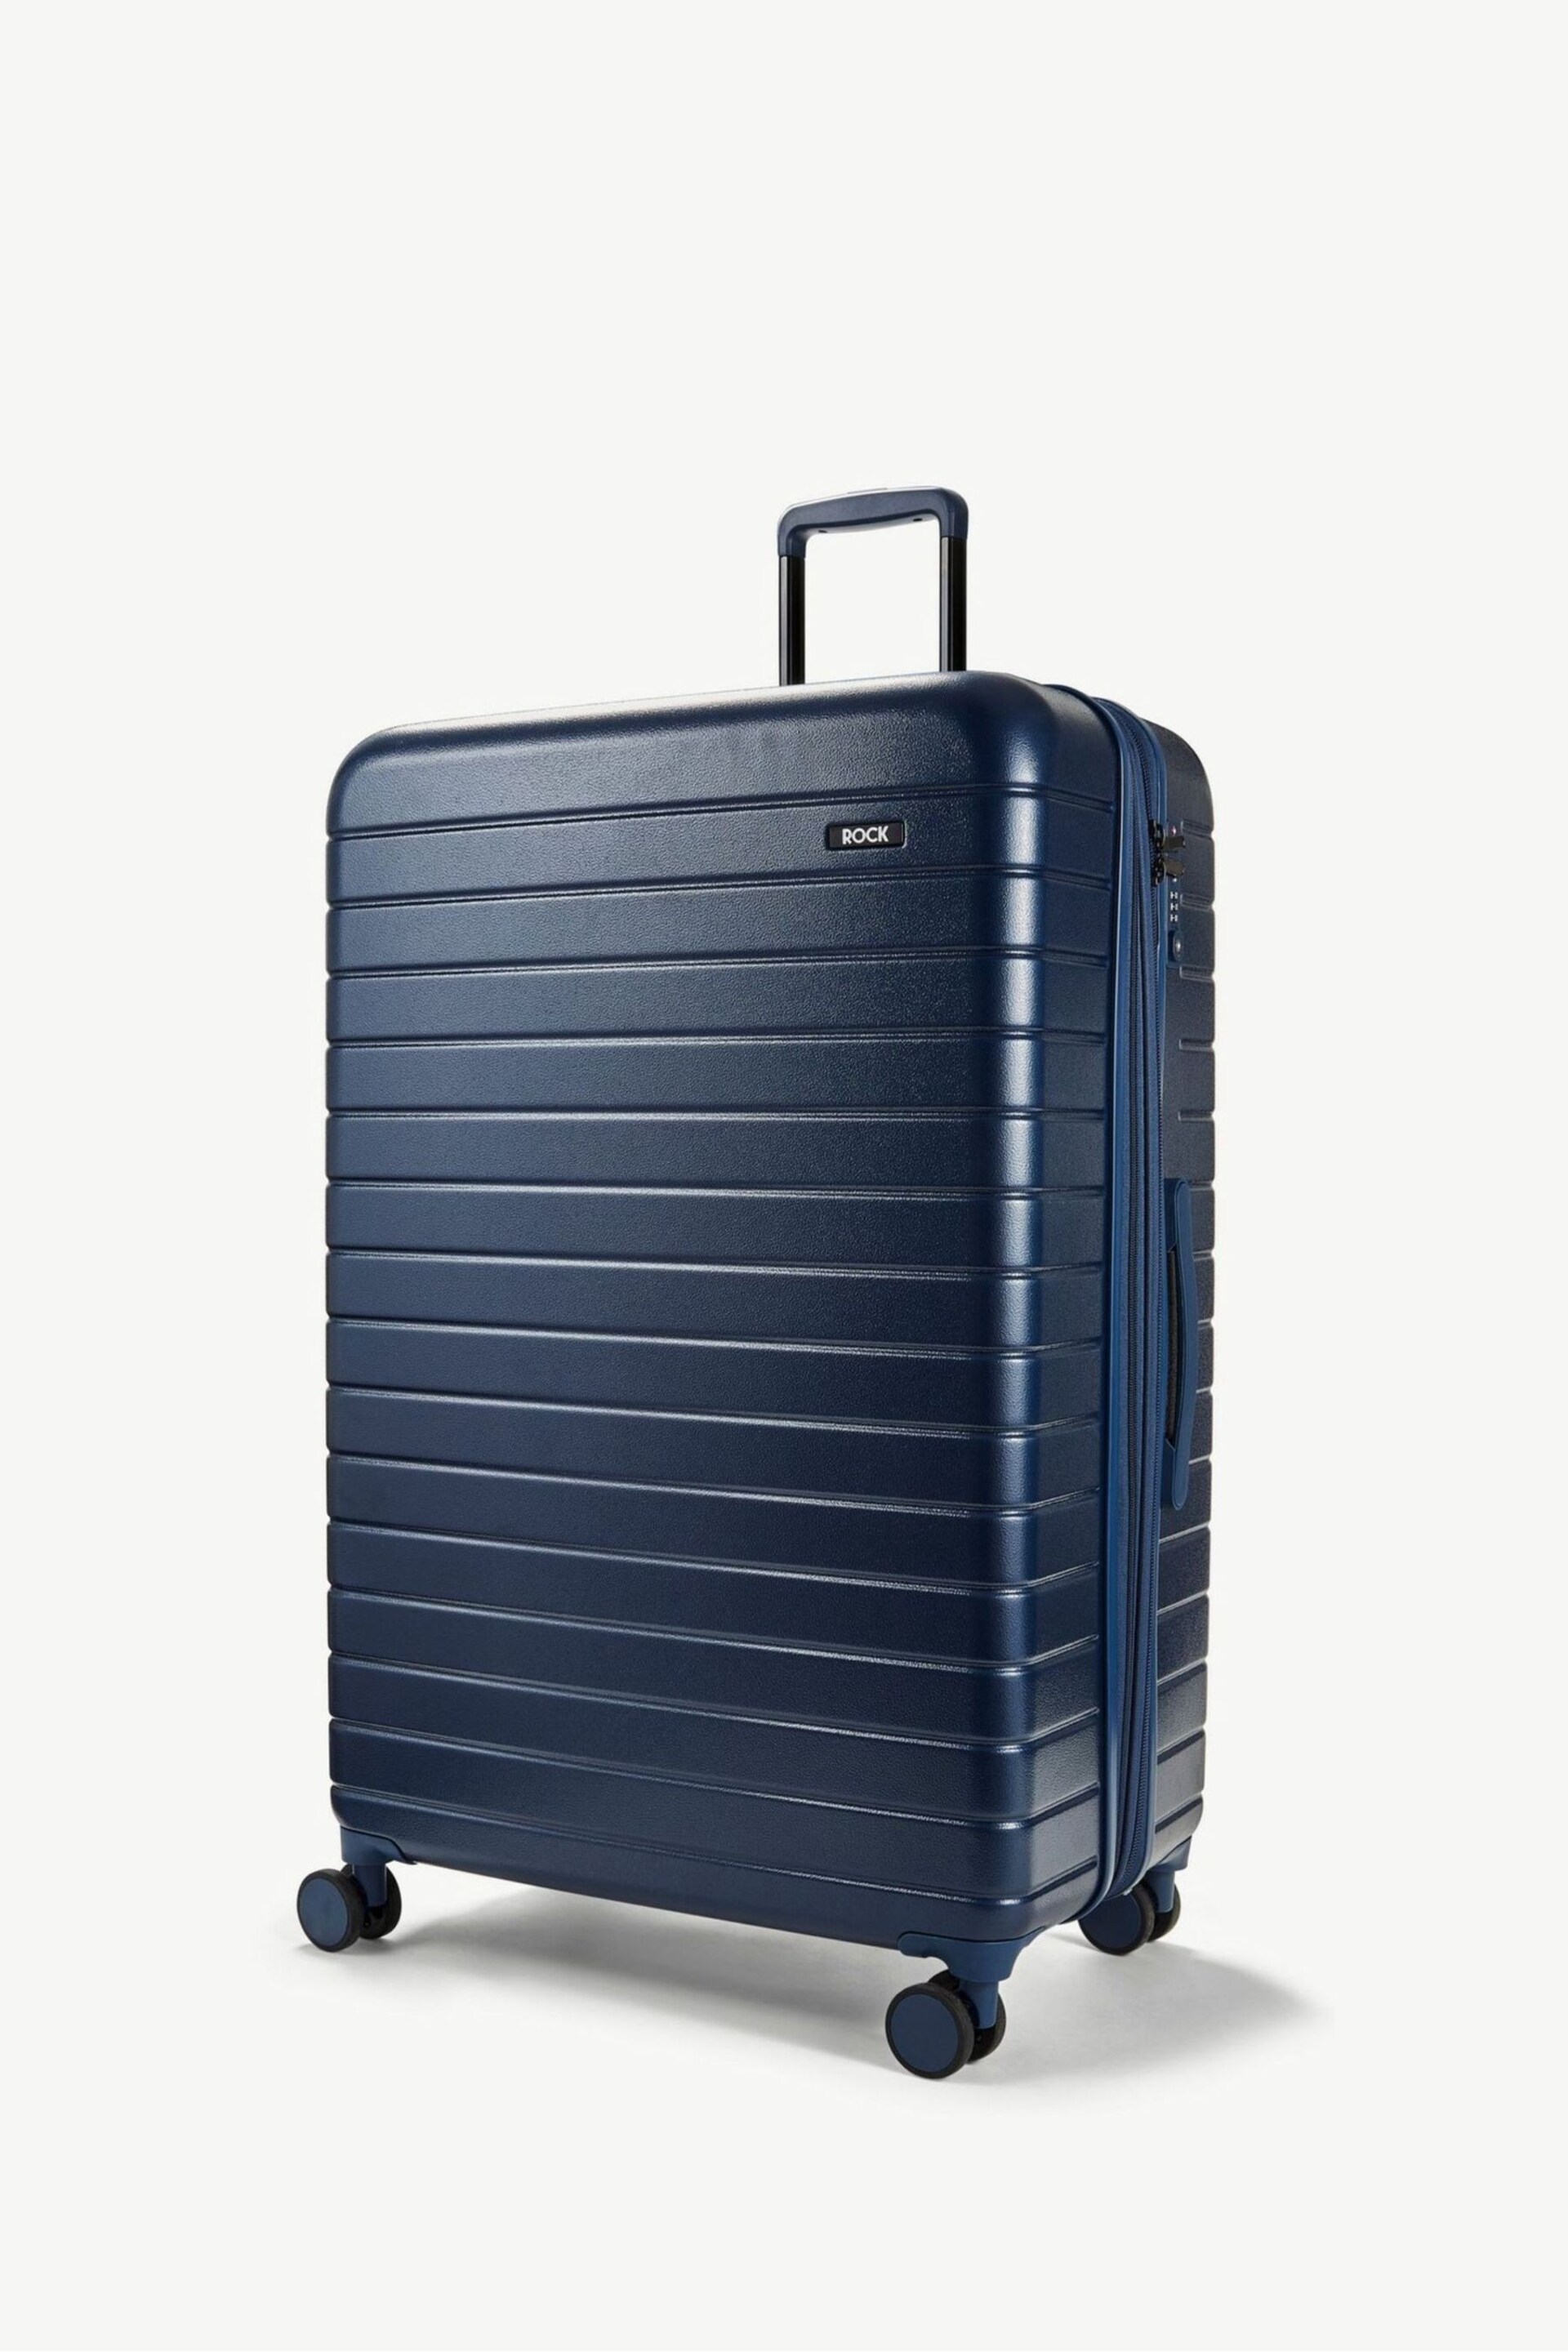 Rock Luggage Novo Large Suitcase - Image 1 of 1